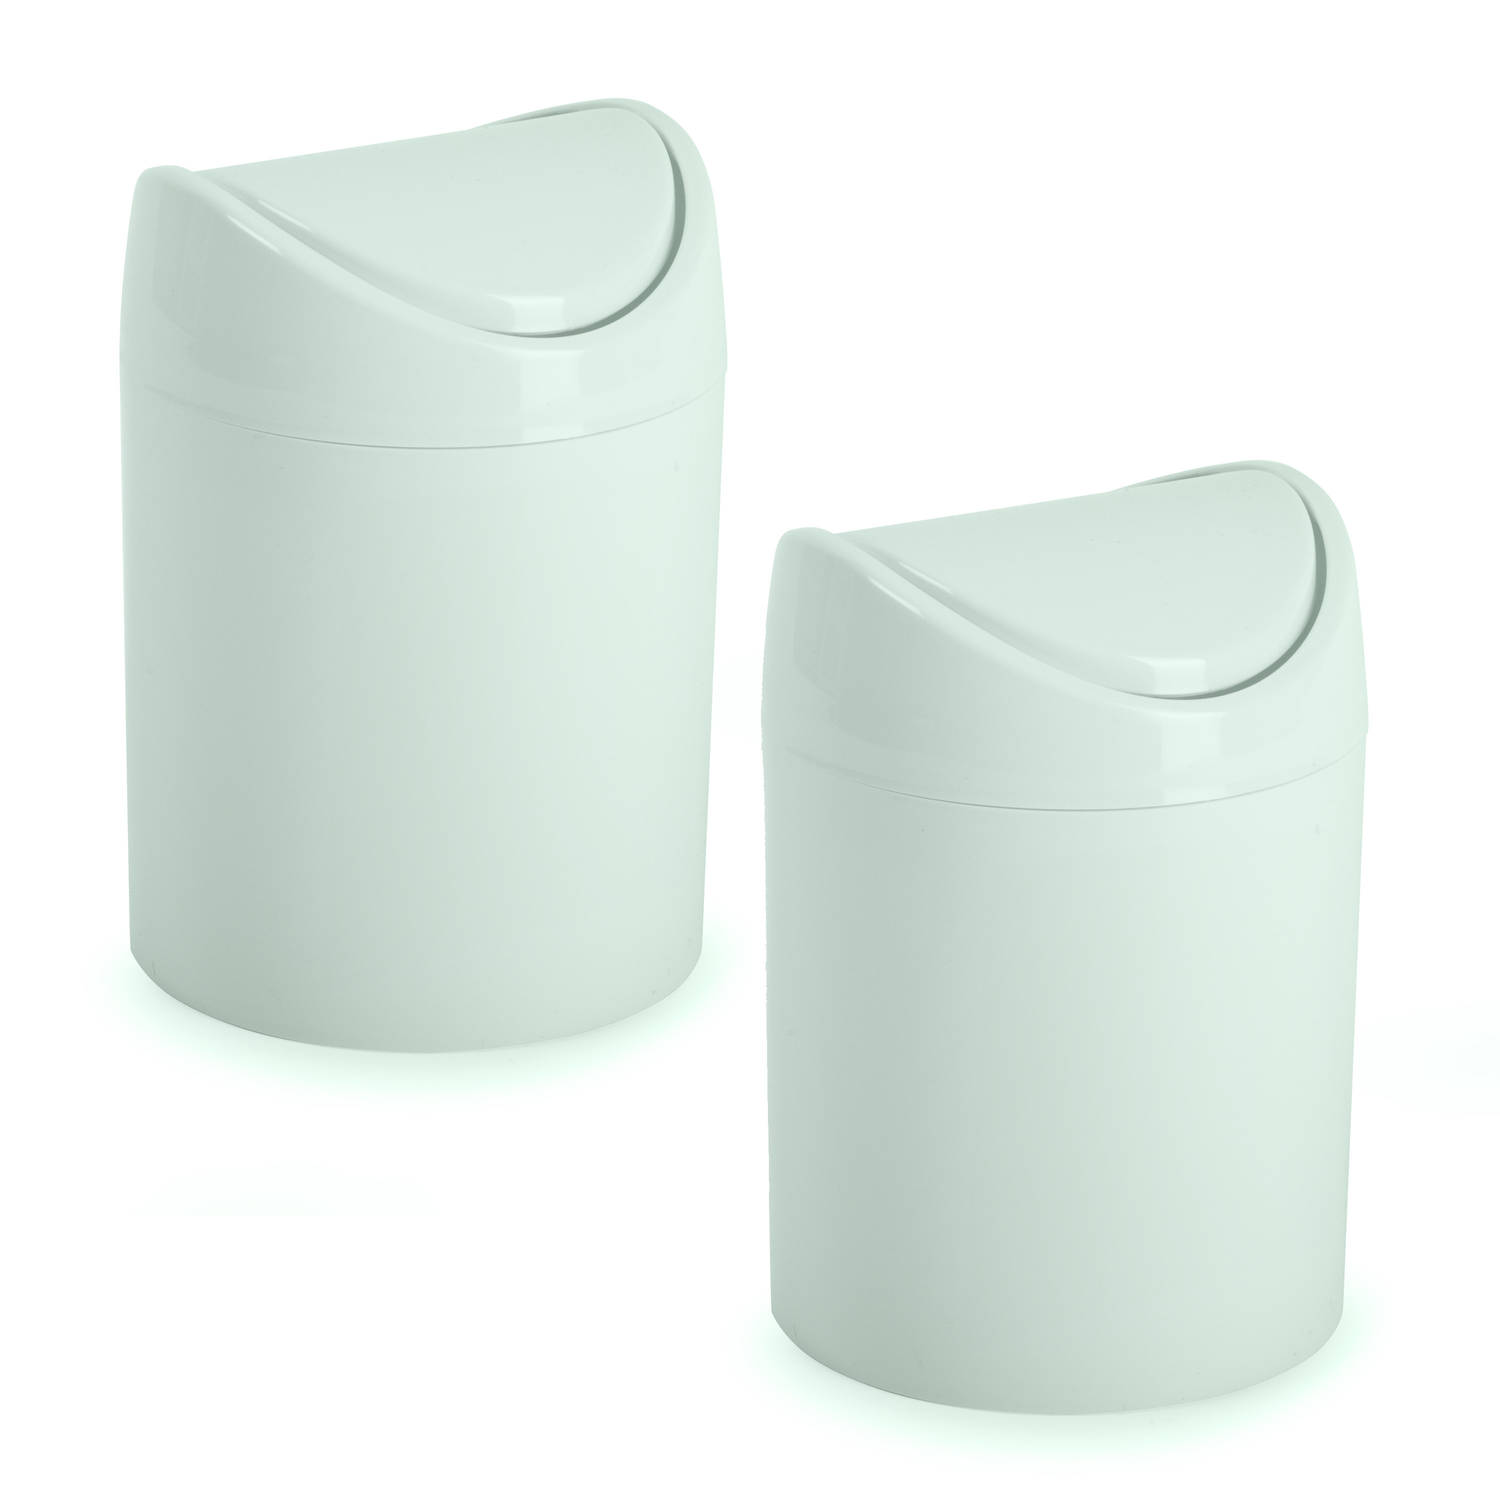 Plasticforte mini prullenbakje - 2x - mintgroen - kunststof - keuken/aanrecht - 12 x 17 cm - Prullenbakken